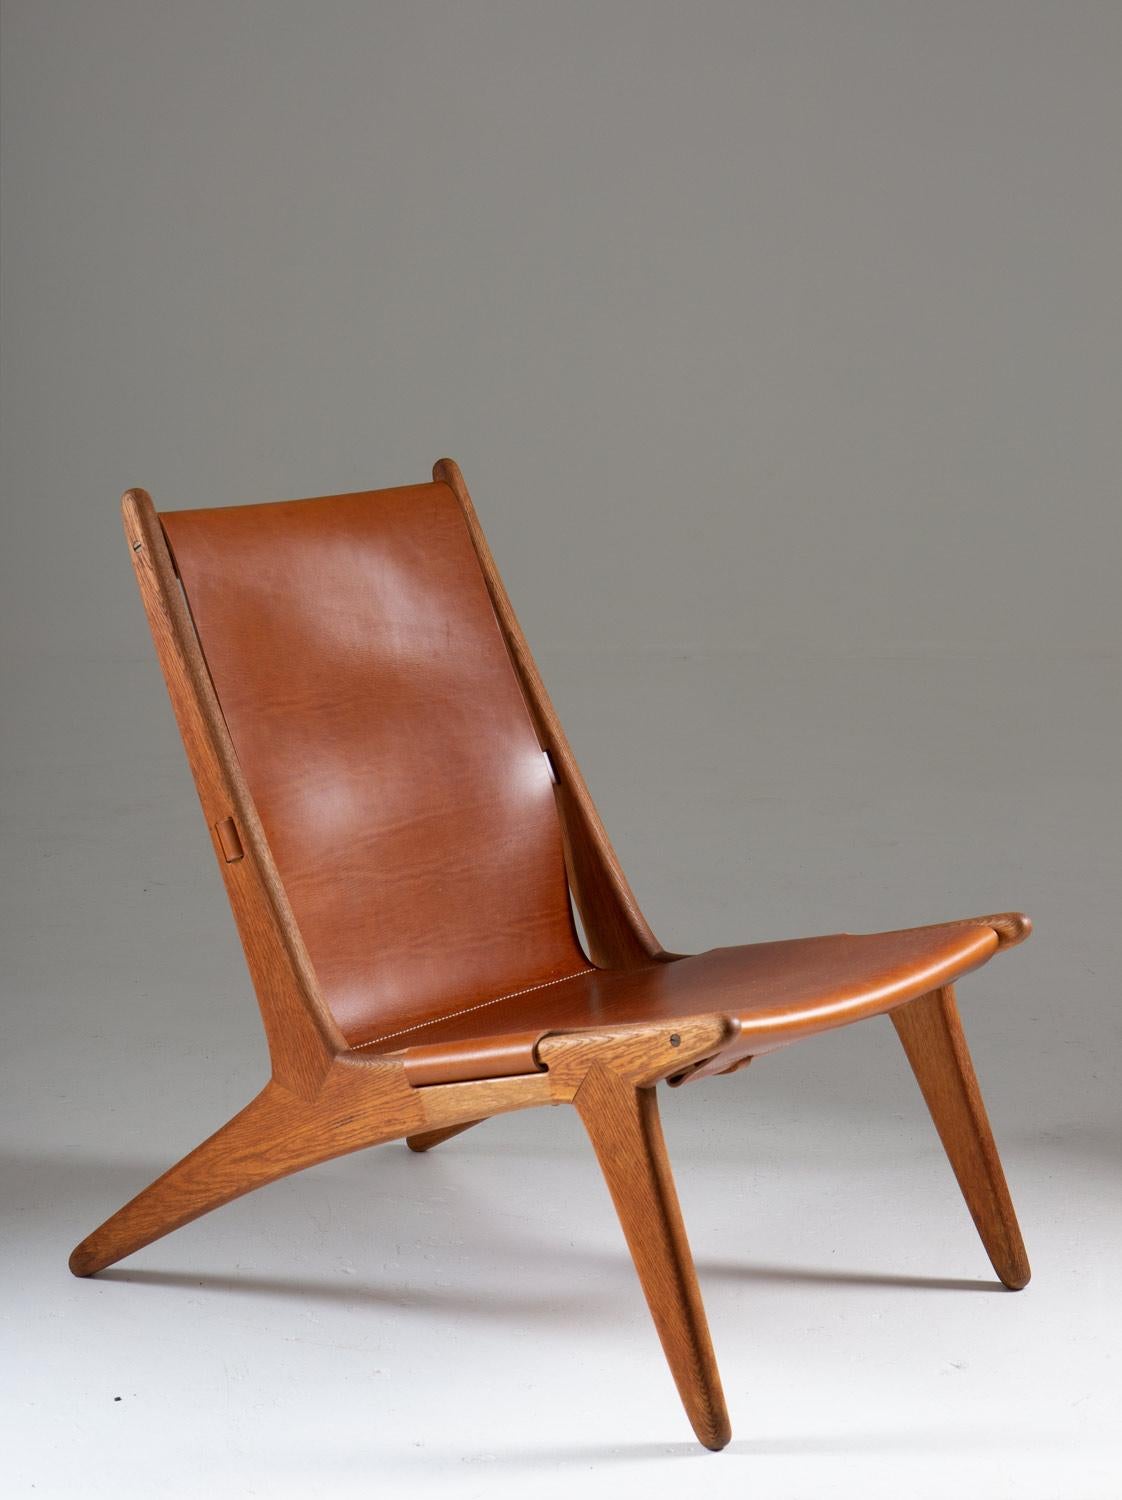 Paire de rares chaises longues modèle 204 par Uno & O¨sten Kristiansson pour Luxus, Suède.
La chaise de chasse a été conçue par Uno et O¨sten Kristiansson en 1954 et appartient au sommet de l'histoire du design suédois. La chaise est dotée d'un